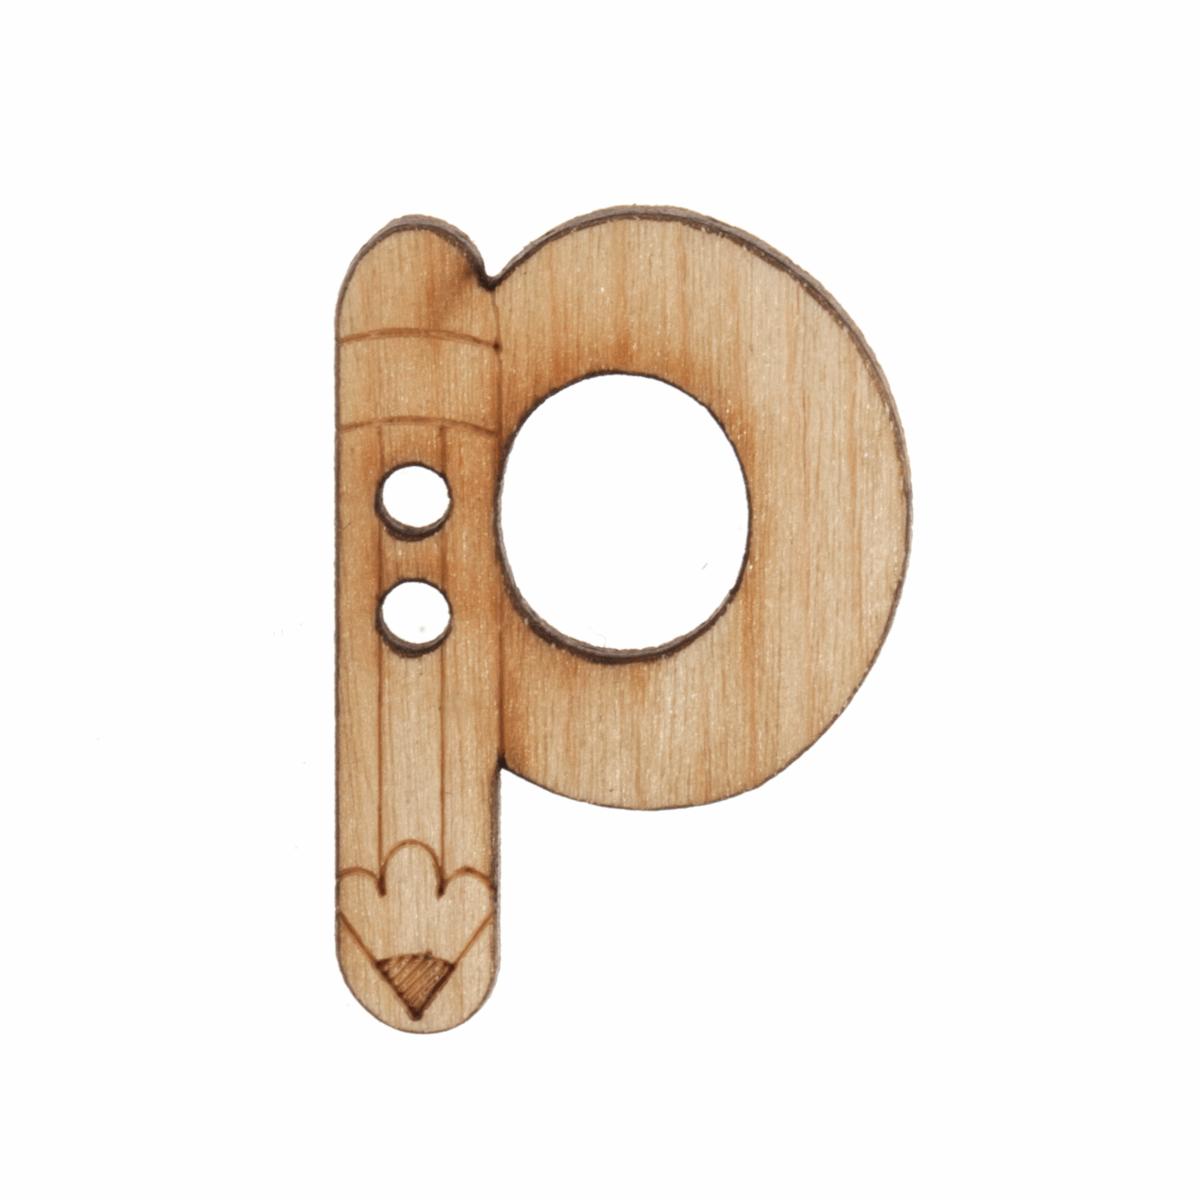 Trimits Wooden Alphabet Button (P) - 20mm/32 lignes